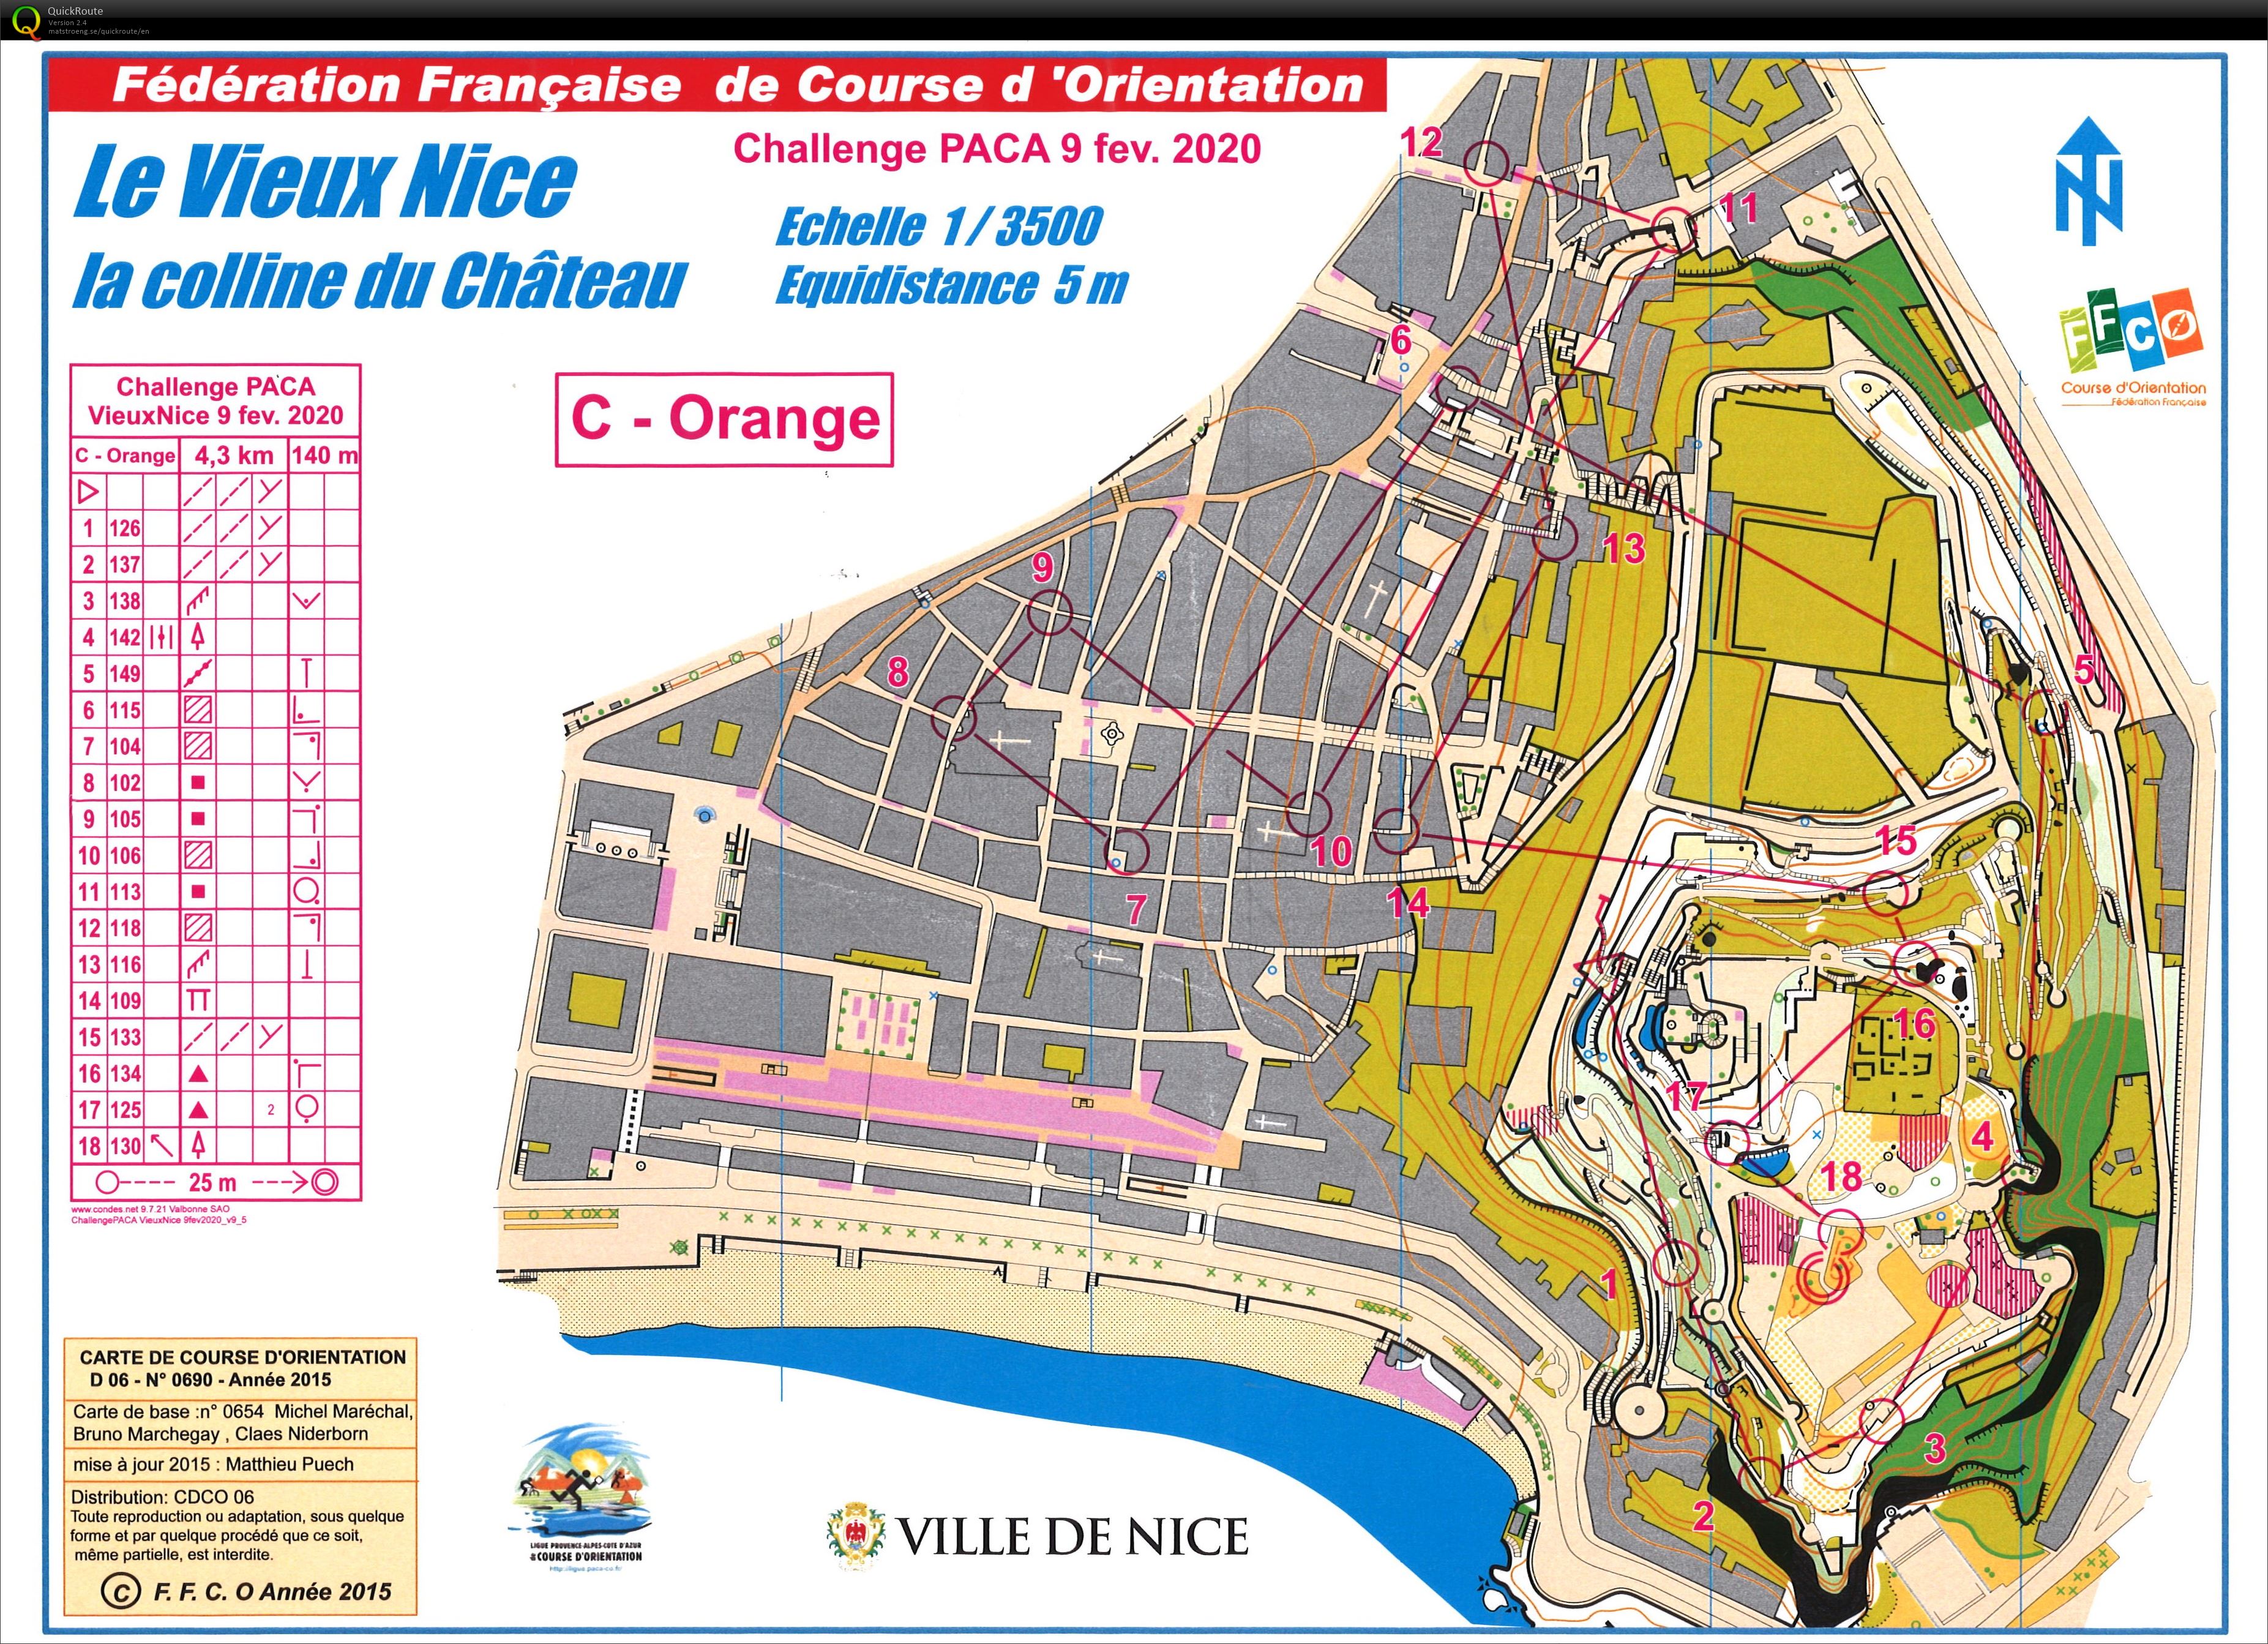 Régionale CN Vieux Nice (09-02-2020)